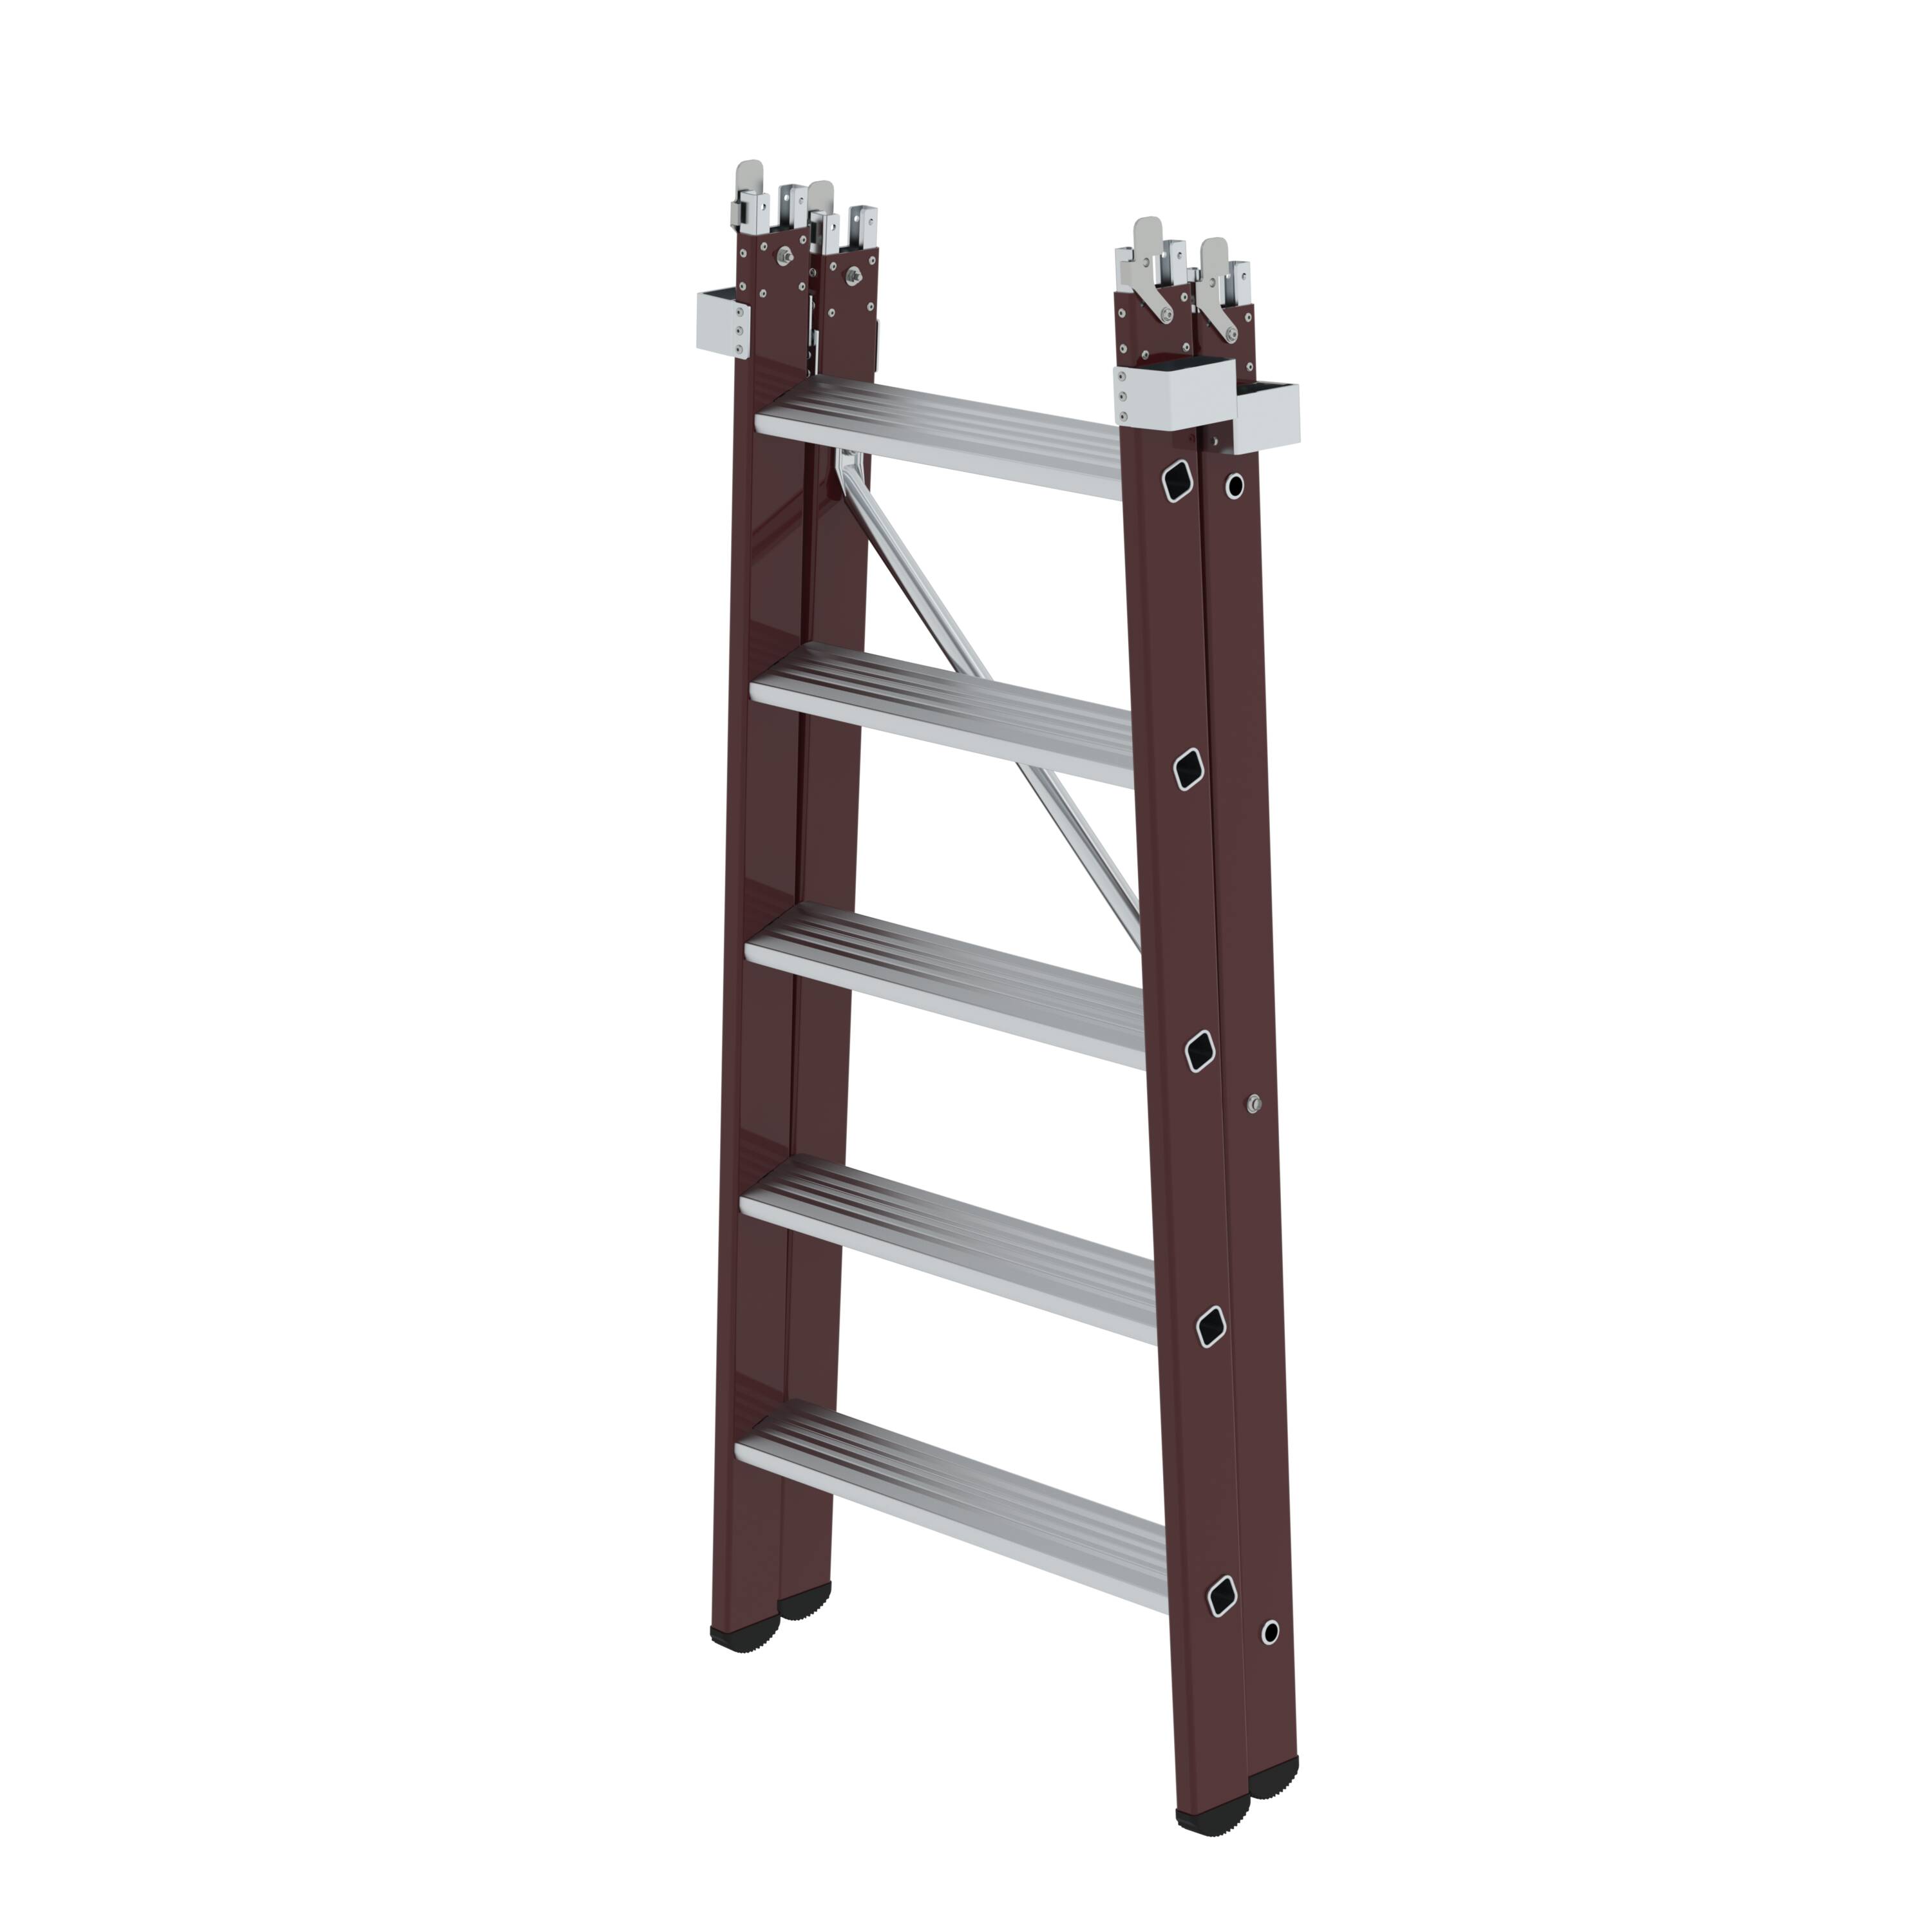 Einsteckteil für Plattformleiter steckbar plus 5 Stufen